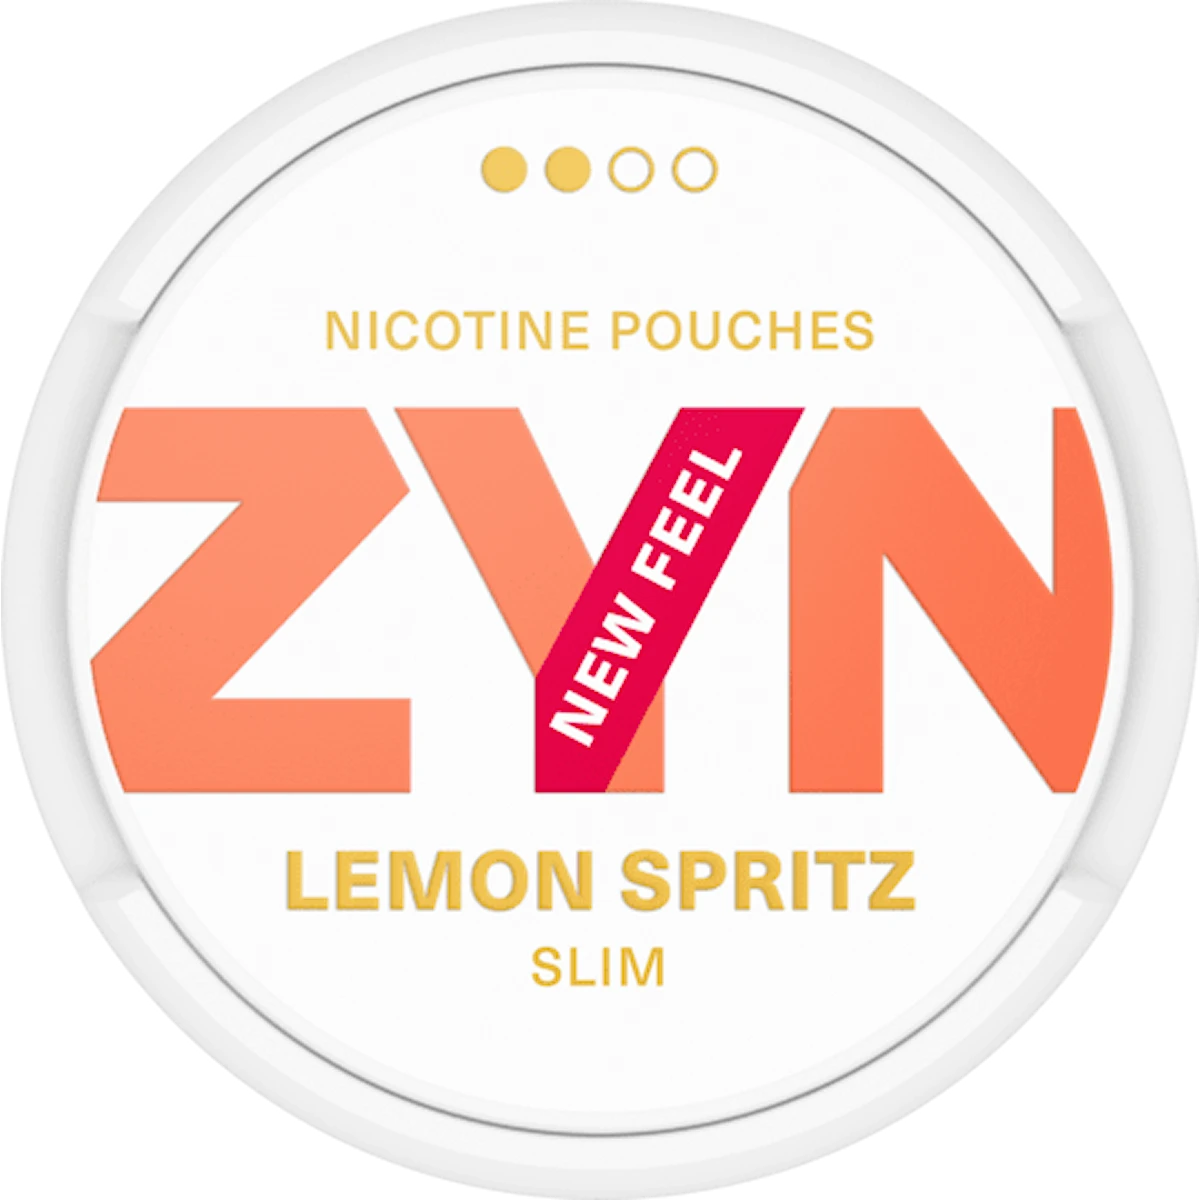 ZYN Lemon Spritz Slim Normal